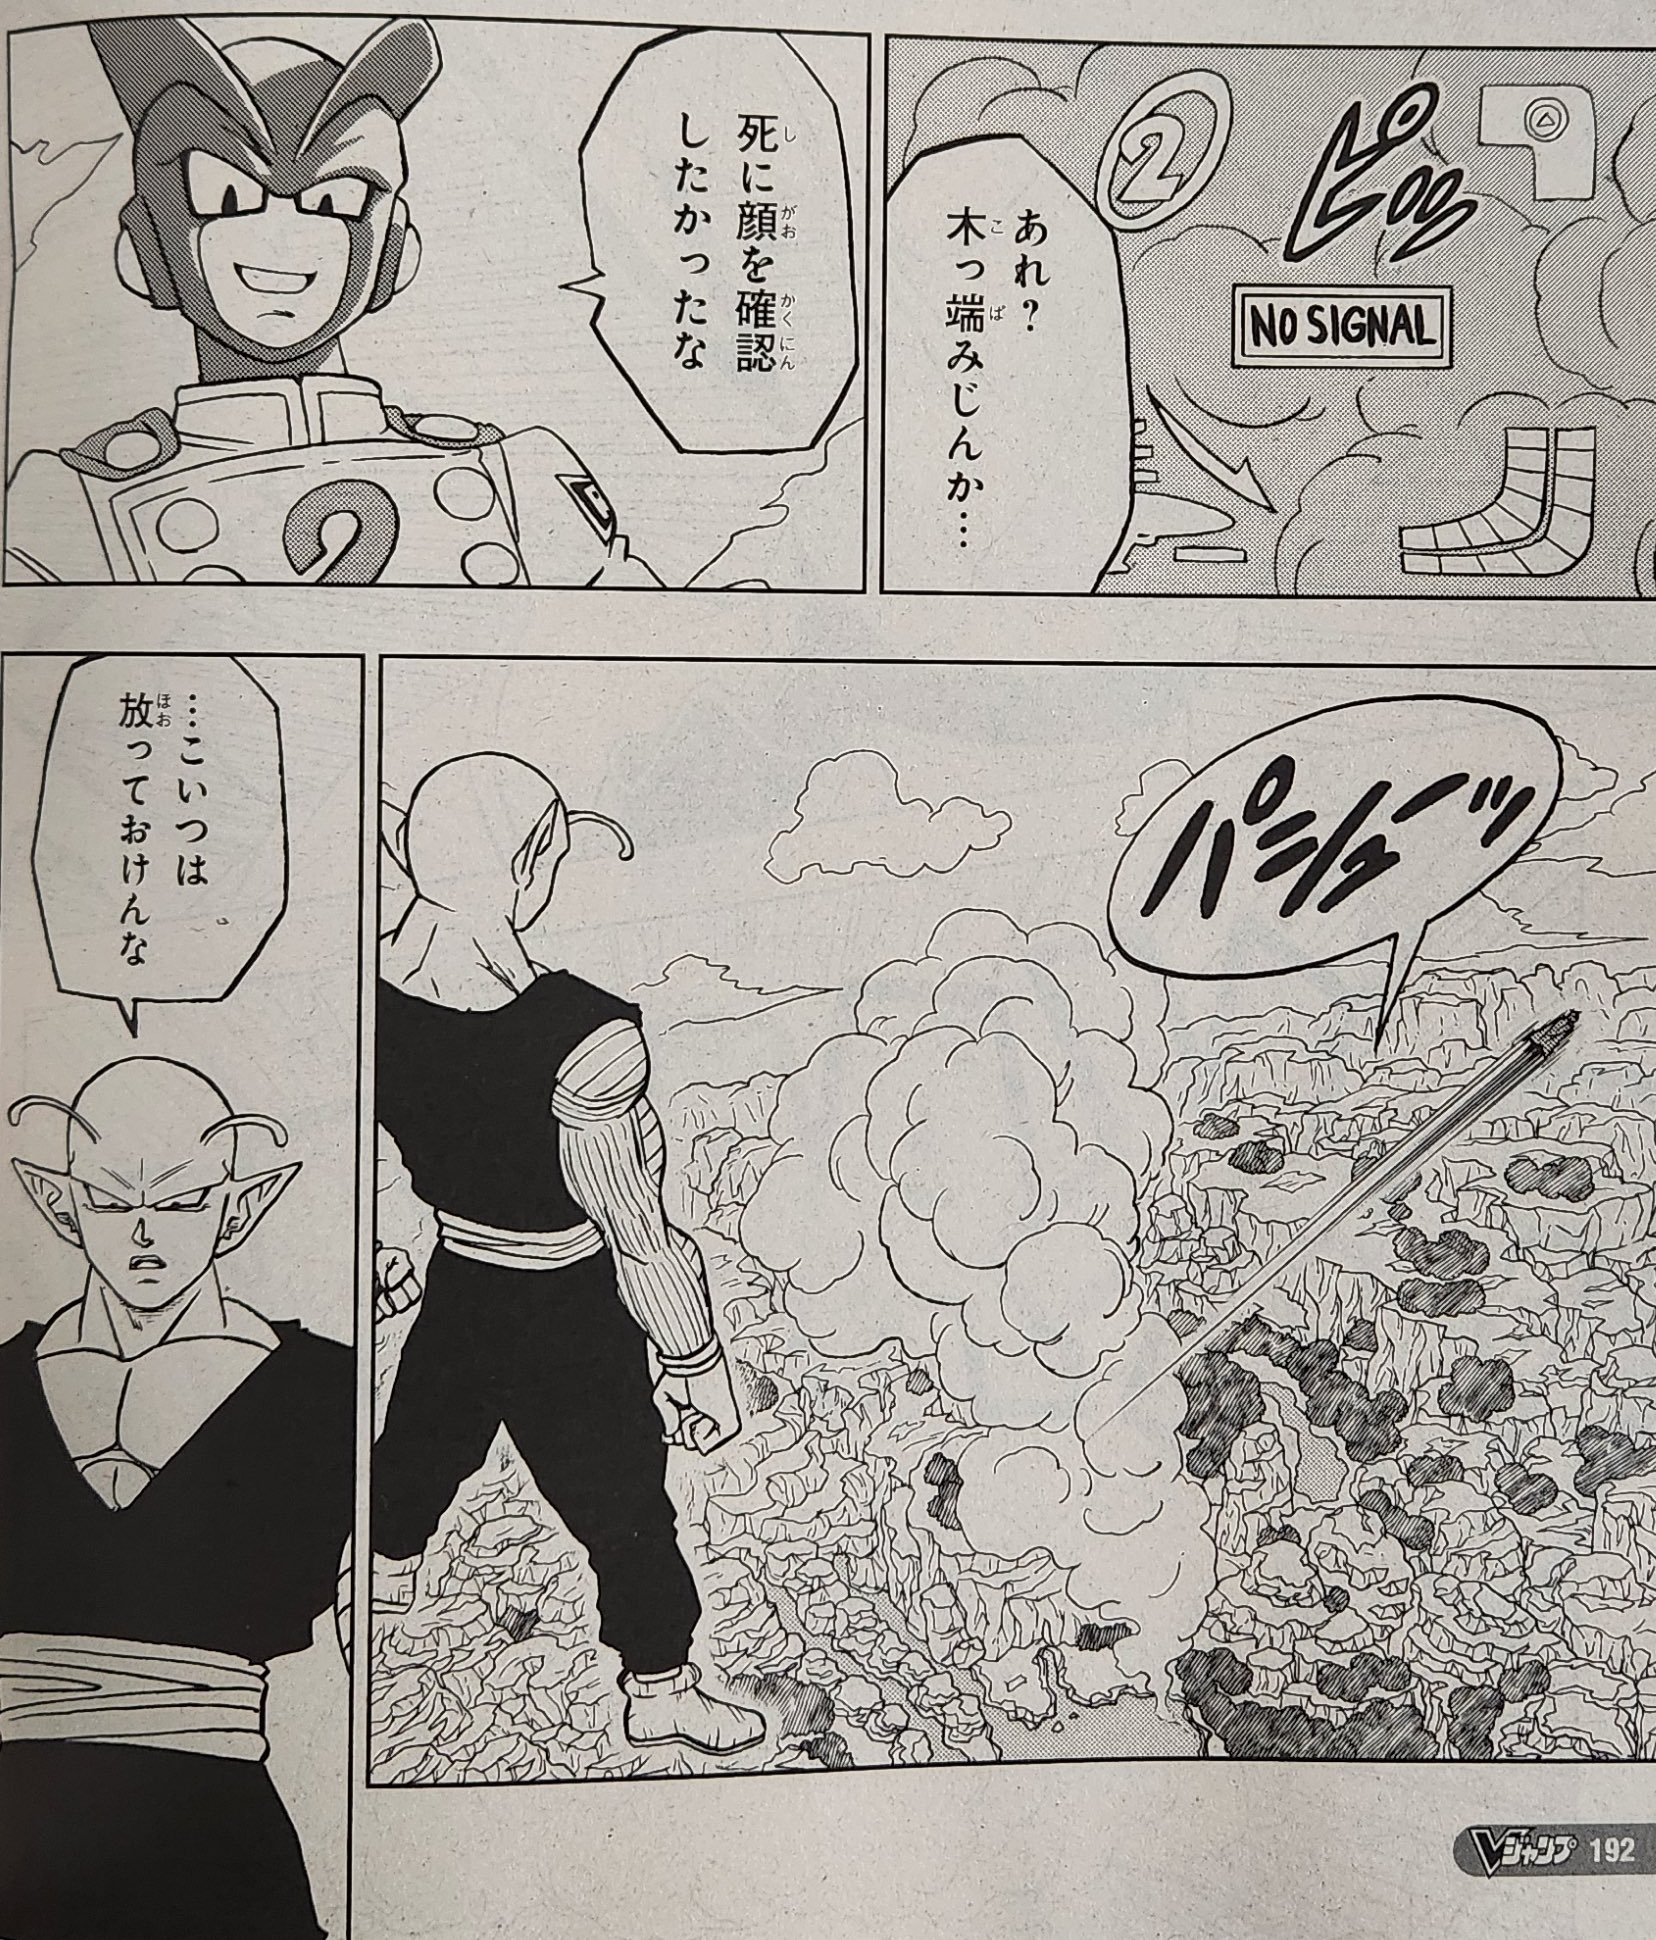 Daiko O Saiyajin on X: Primeiro spoiler do capítulo 92 do mangá de Dragon  Ball Super! Gamma 2 Vs Piccolo! Dia 14 eles lançam oficialmente os  rascunhos.  / X